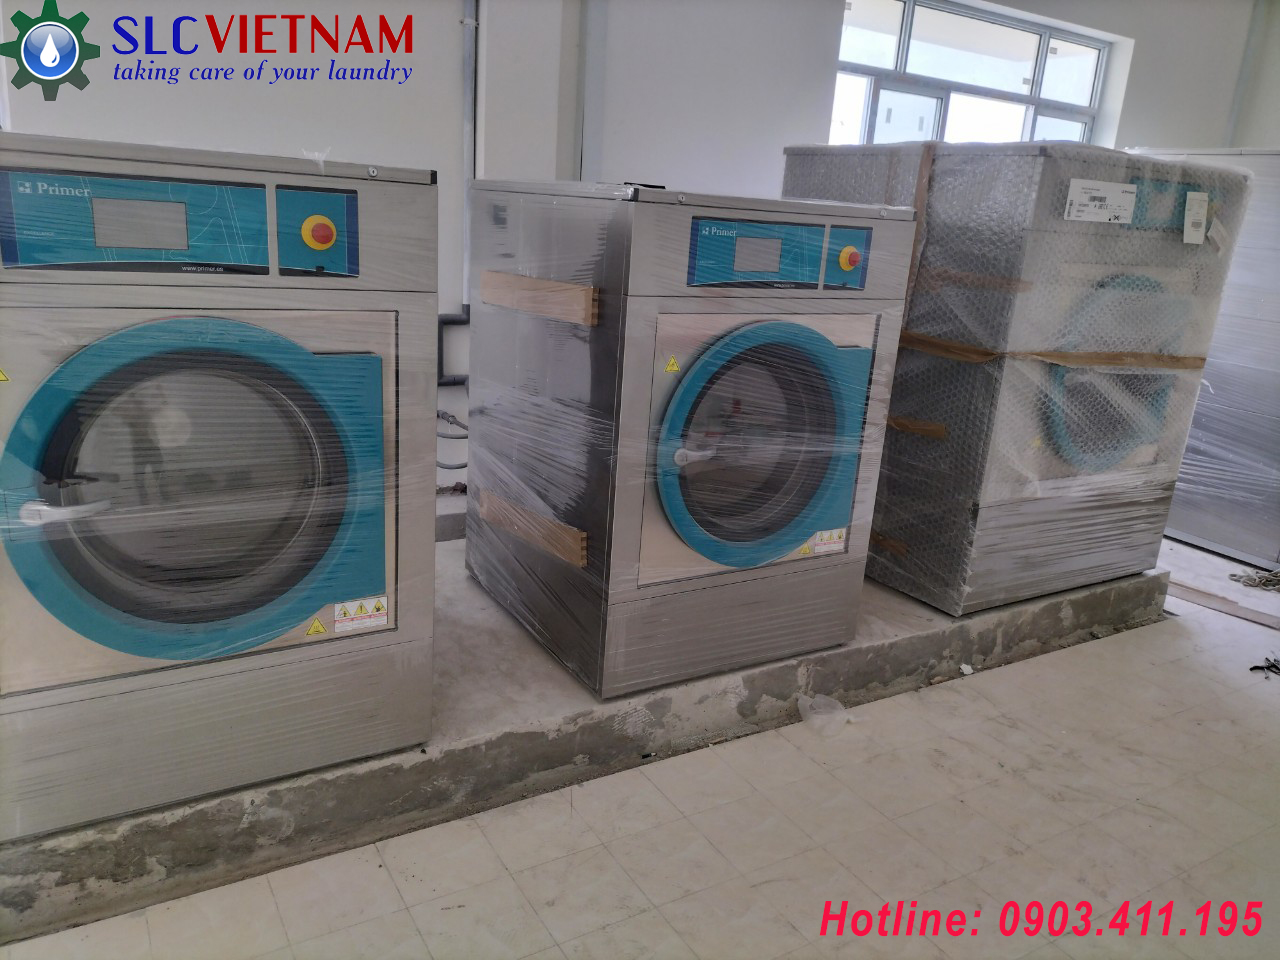 Máy giặt công nghiệp Primer